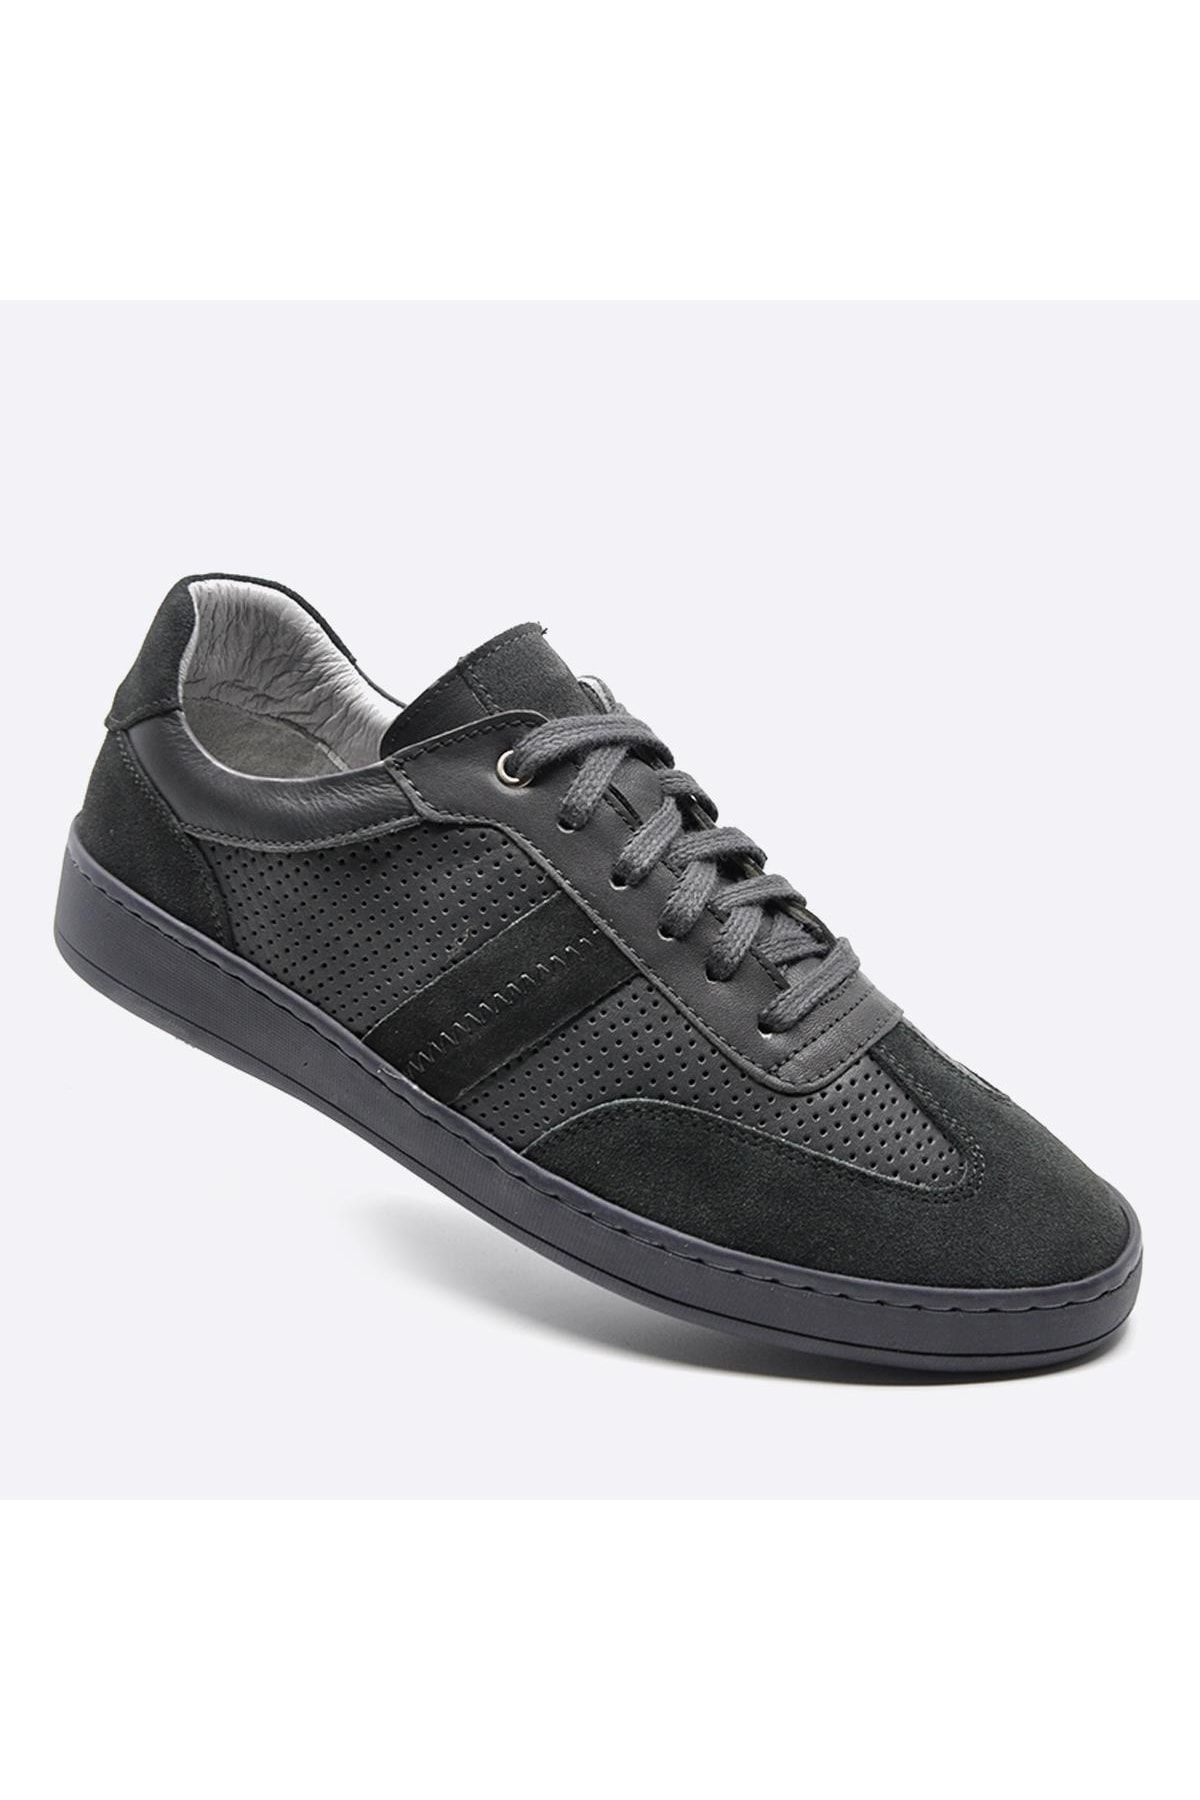 Fosco Hakiki Deri Sneaker Erkek Ayakkabı Gri 9870